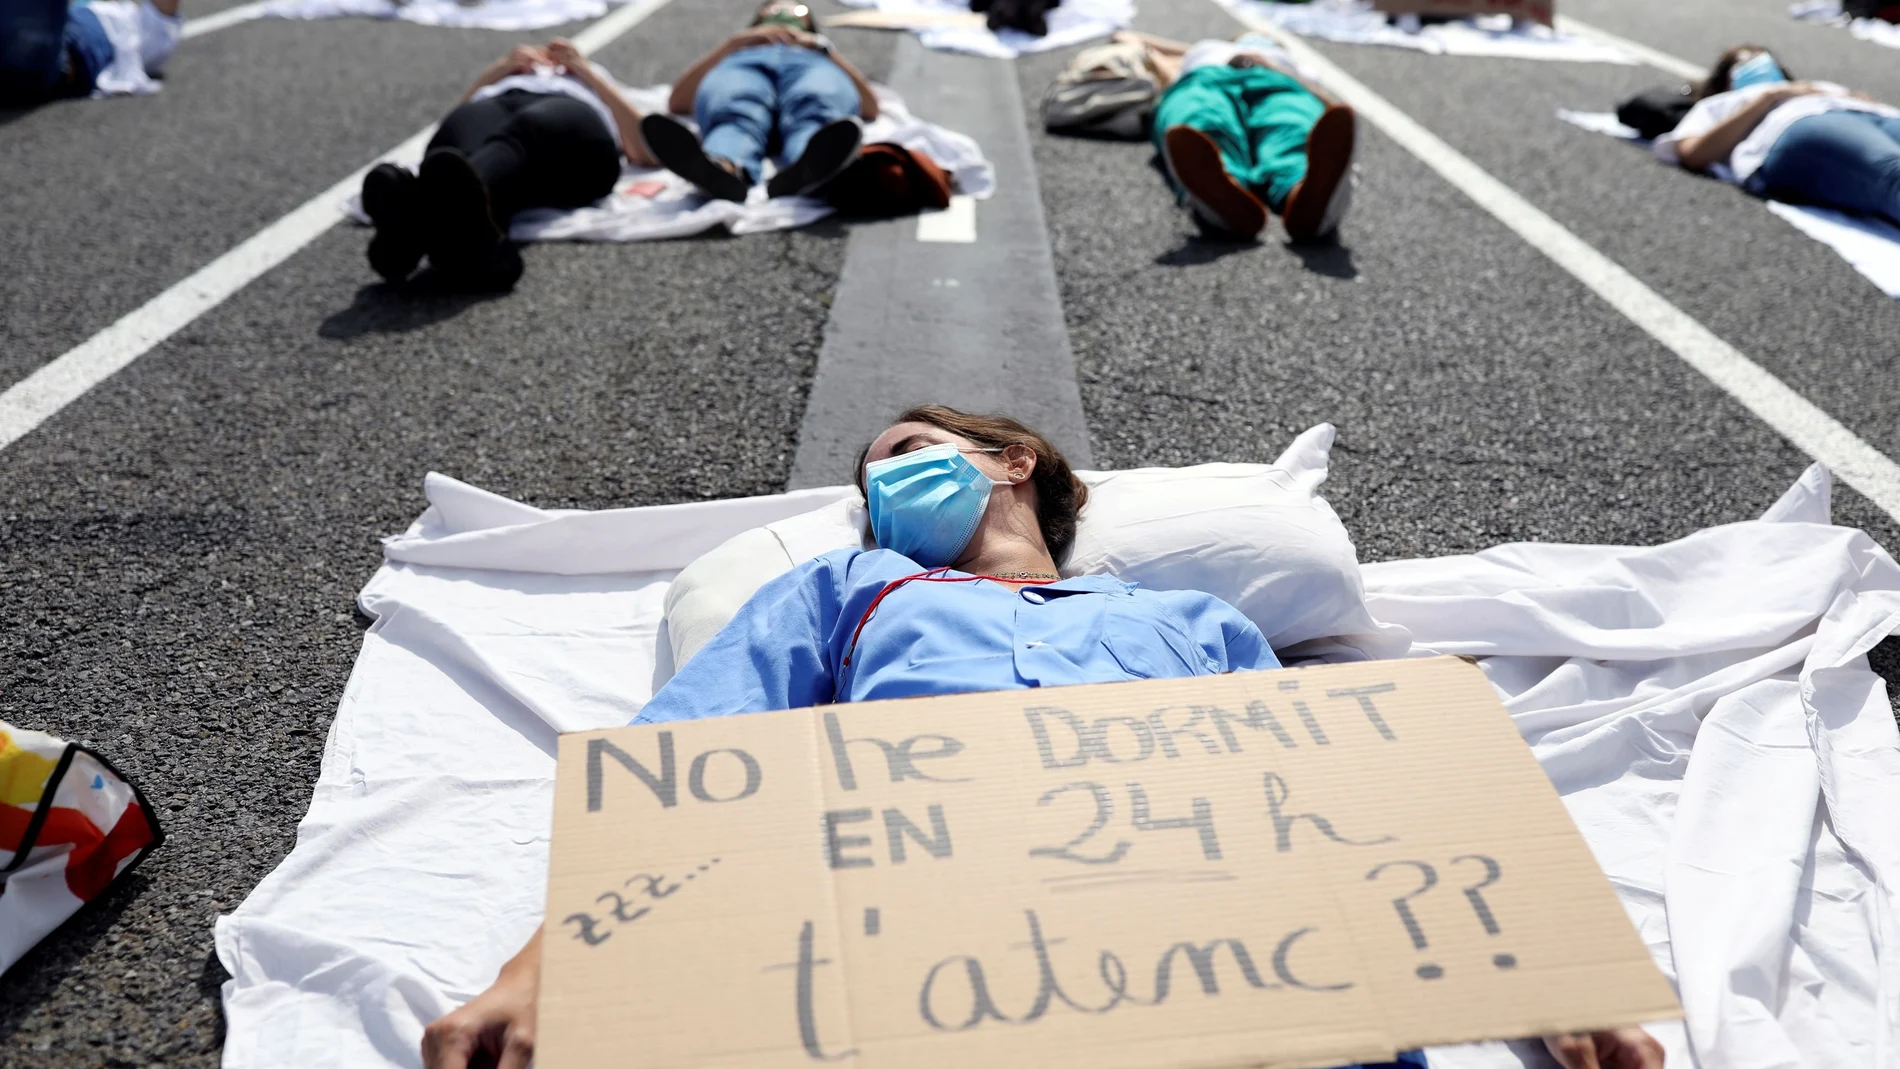 Protestas de los MIR hoy en Barcelona con un cartel que reza: "No he dormido en 24, ¿te atiendo?"